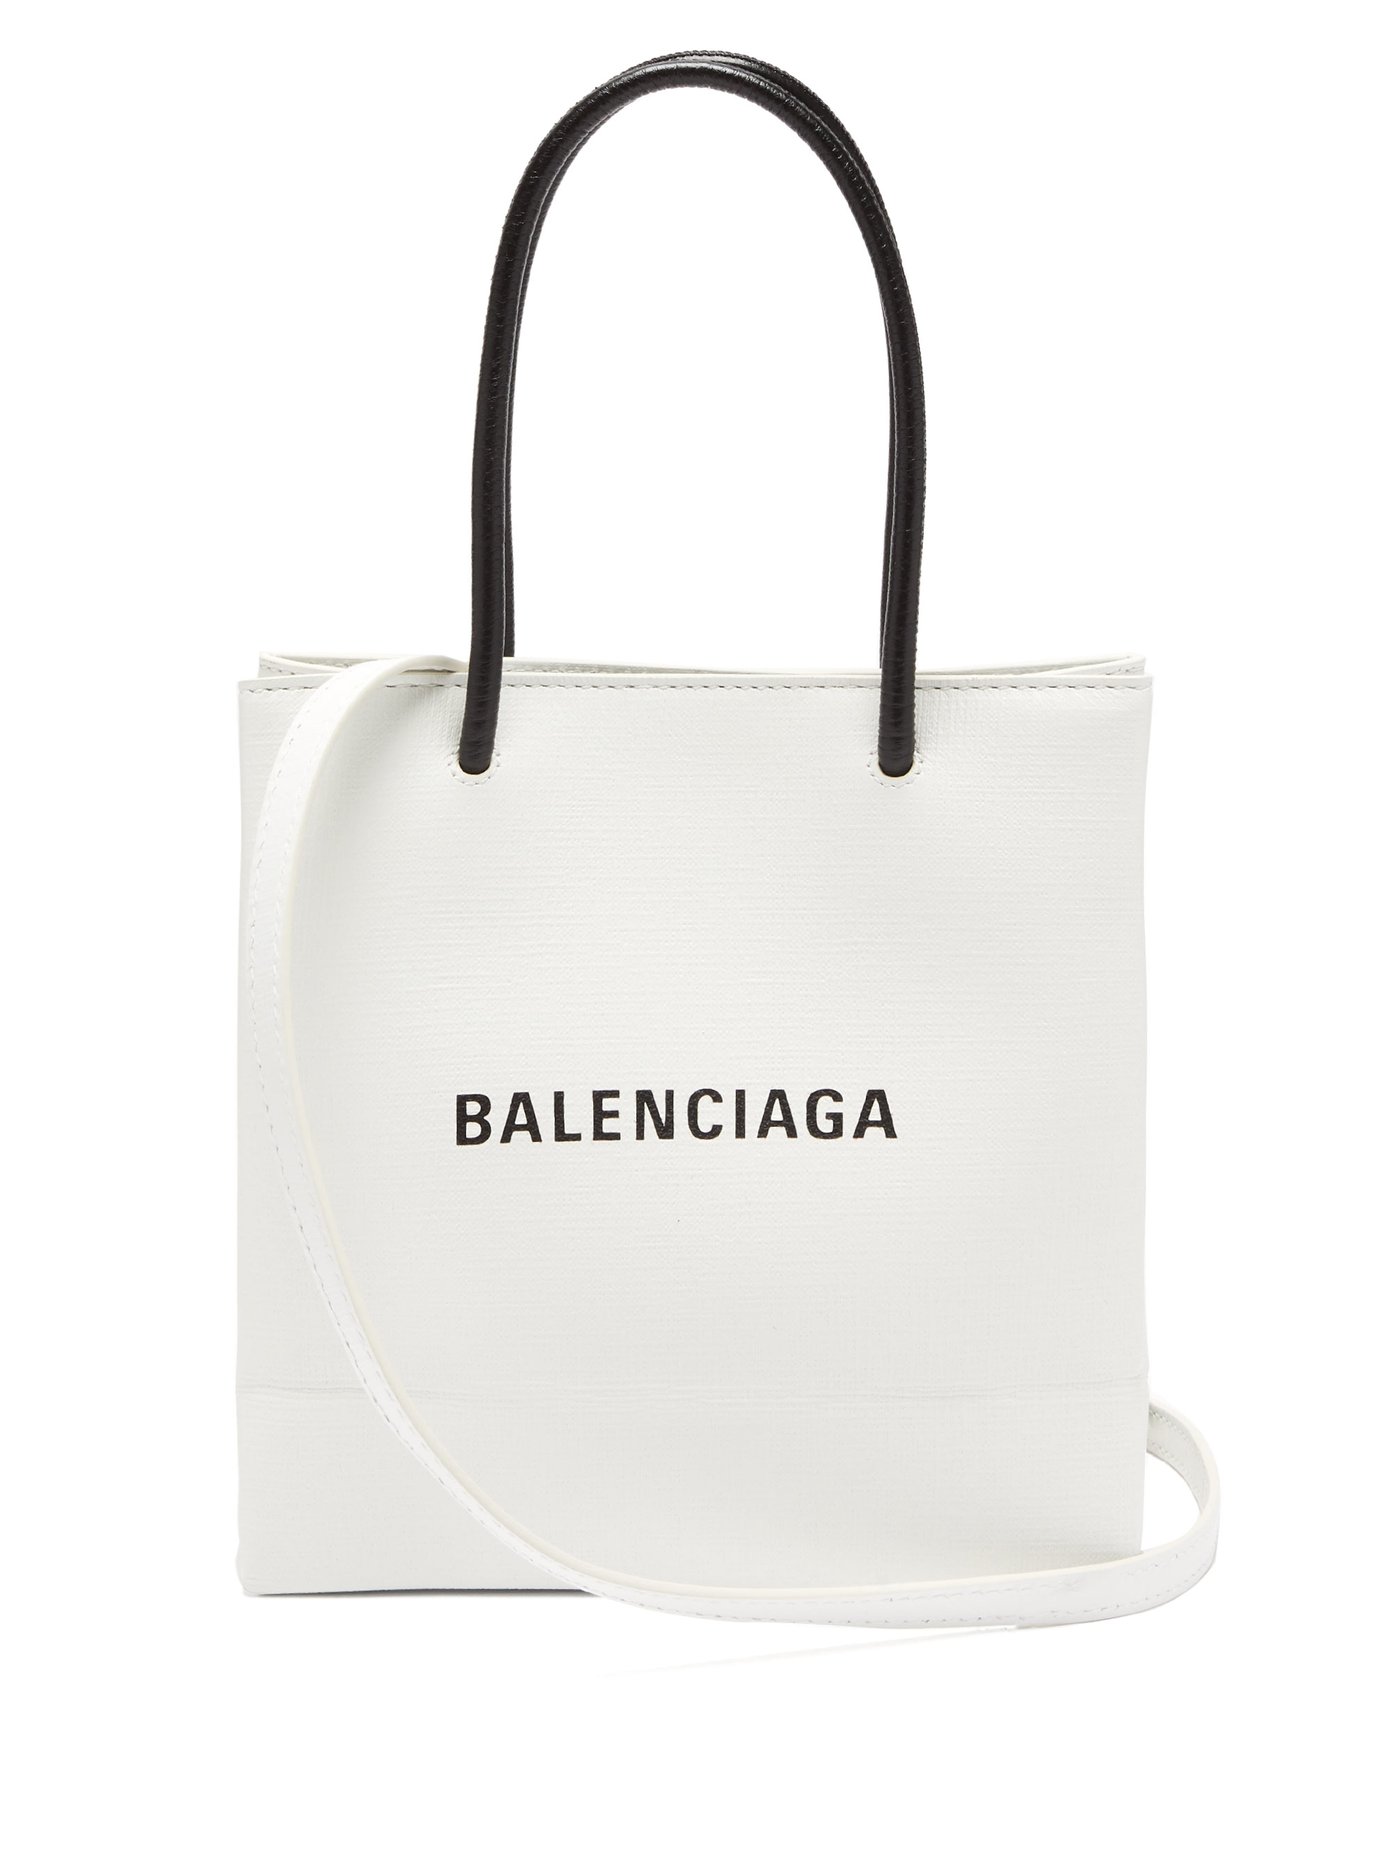 balenciaga bag shop online